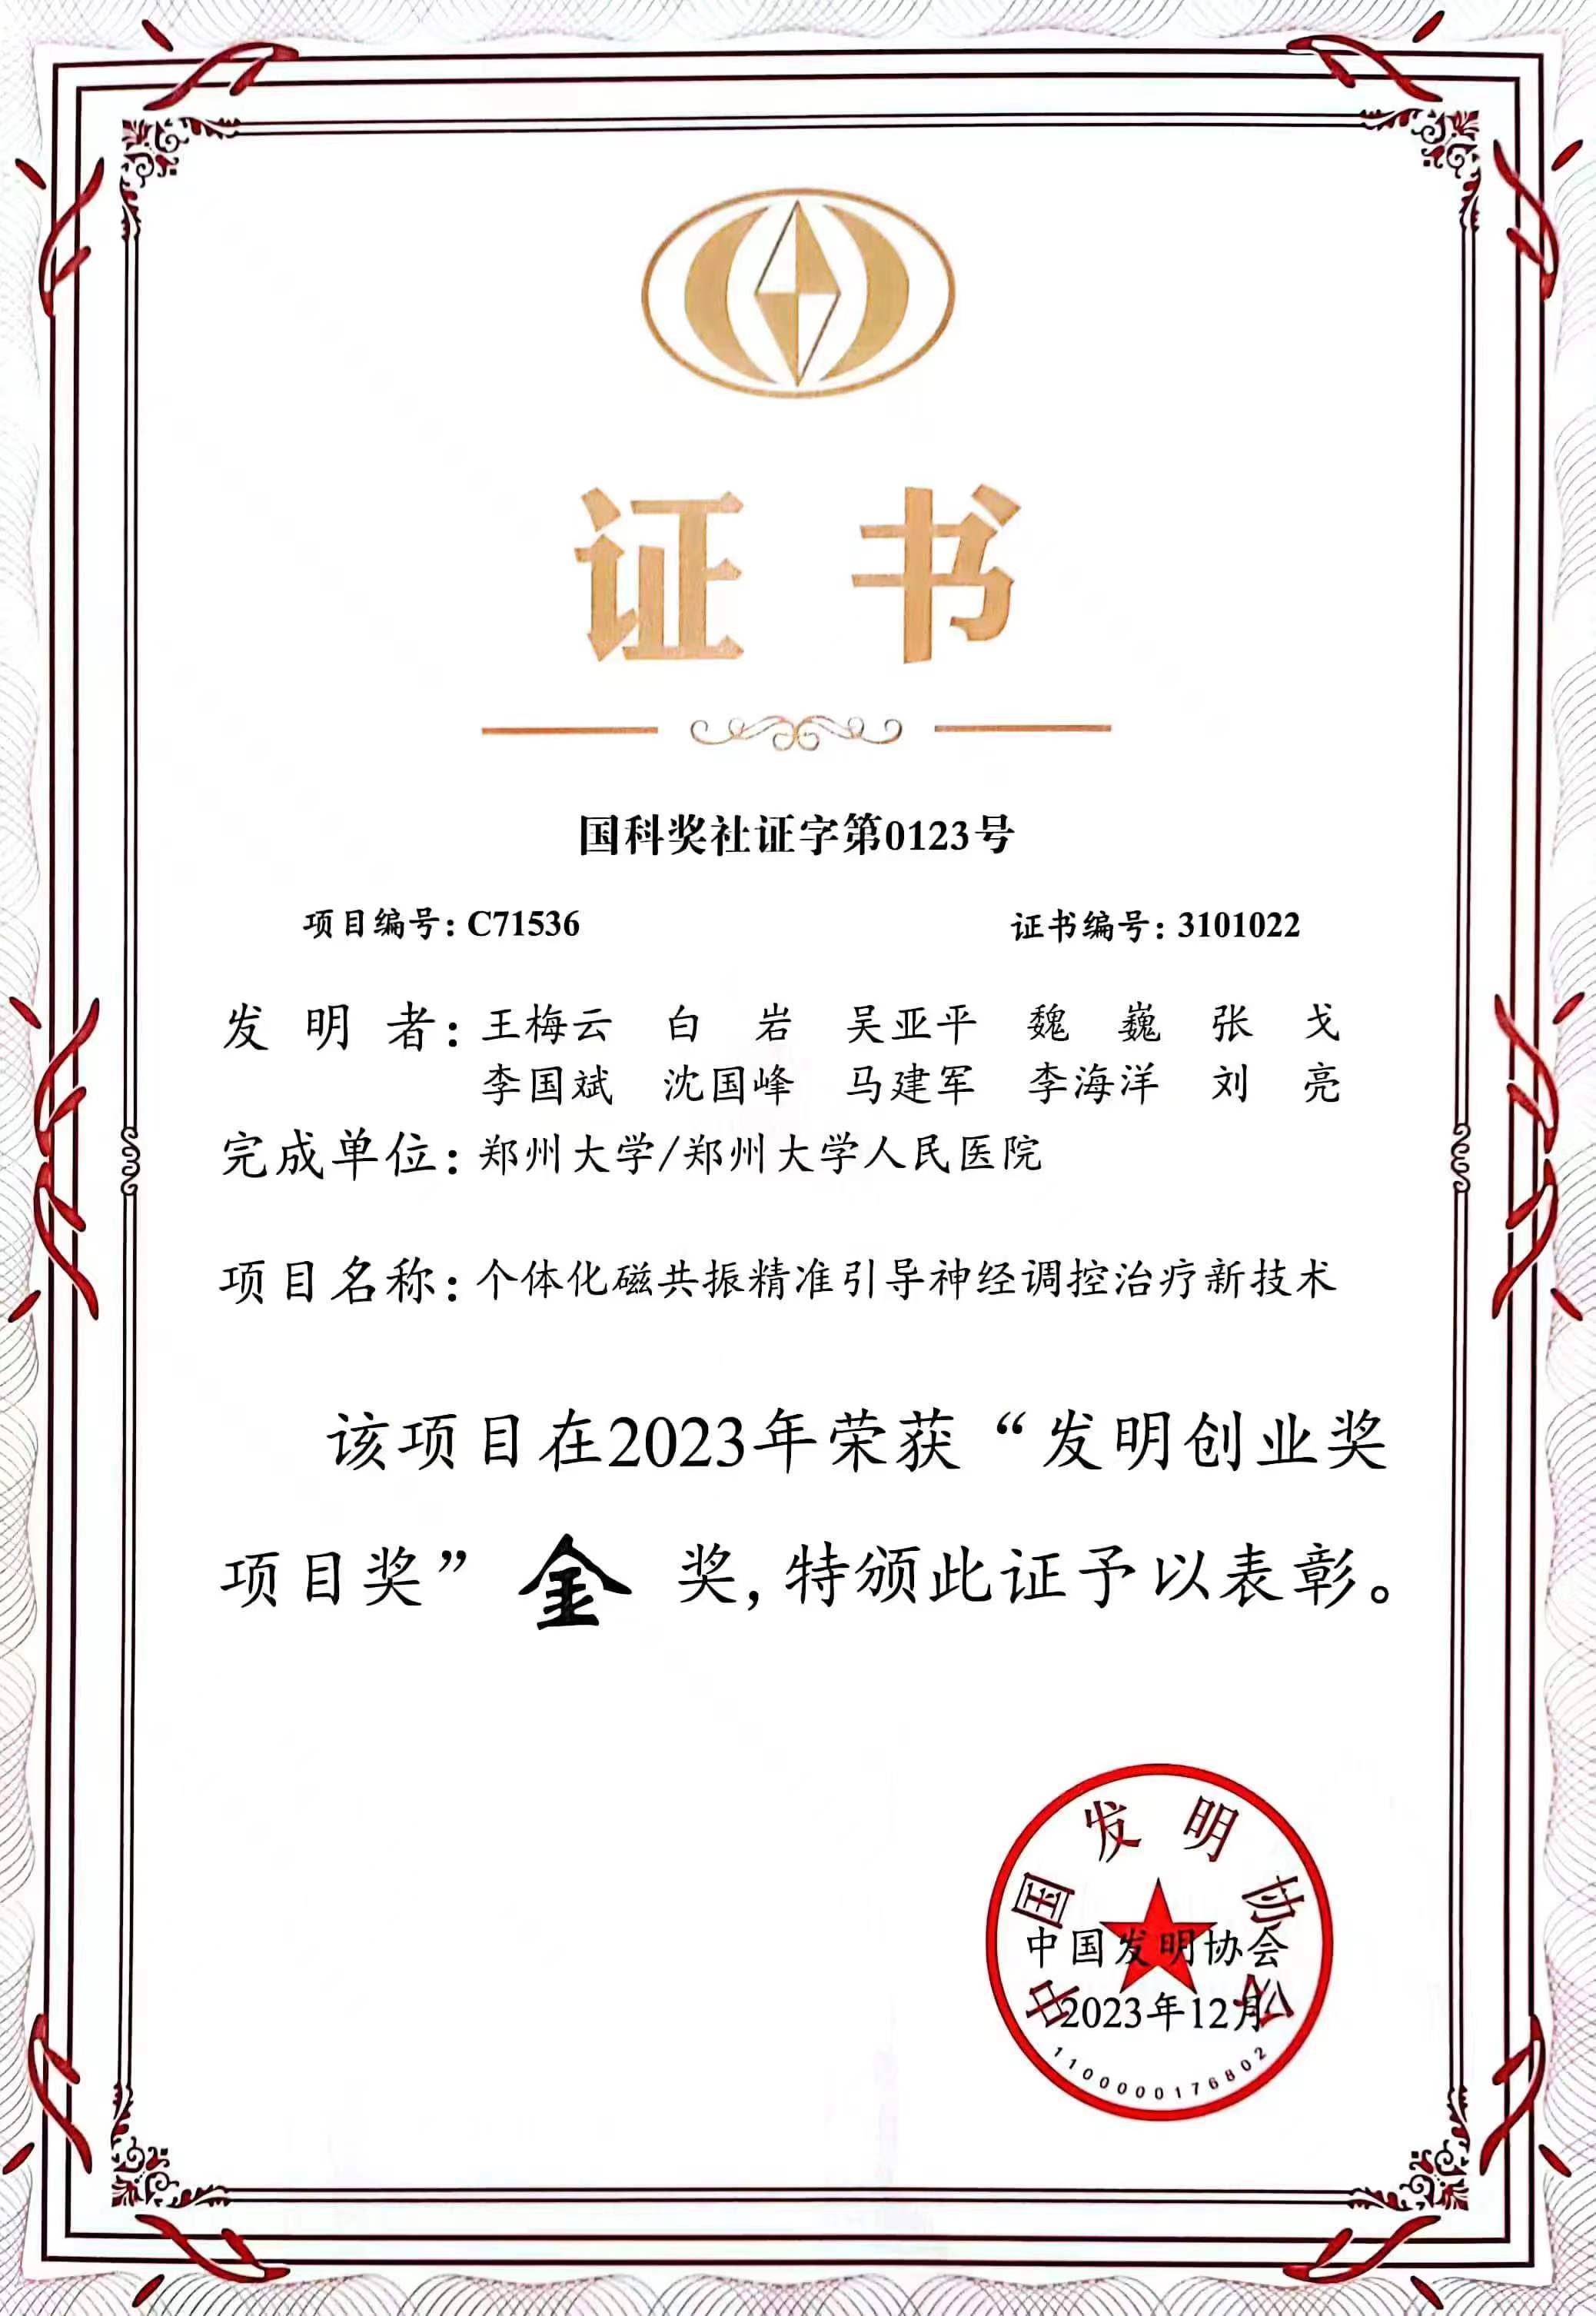 郑州大学王梅云教授喜获中国唯一世界知识产权组织最佳